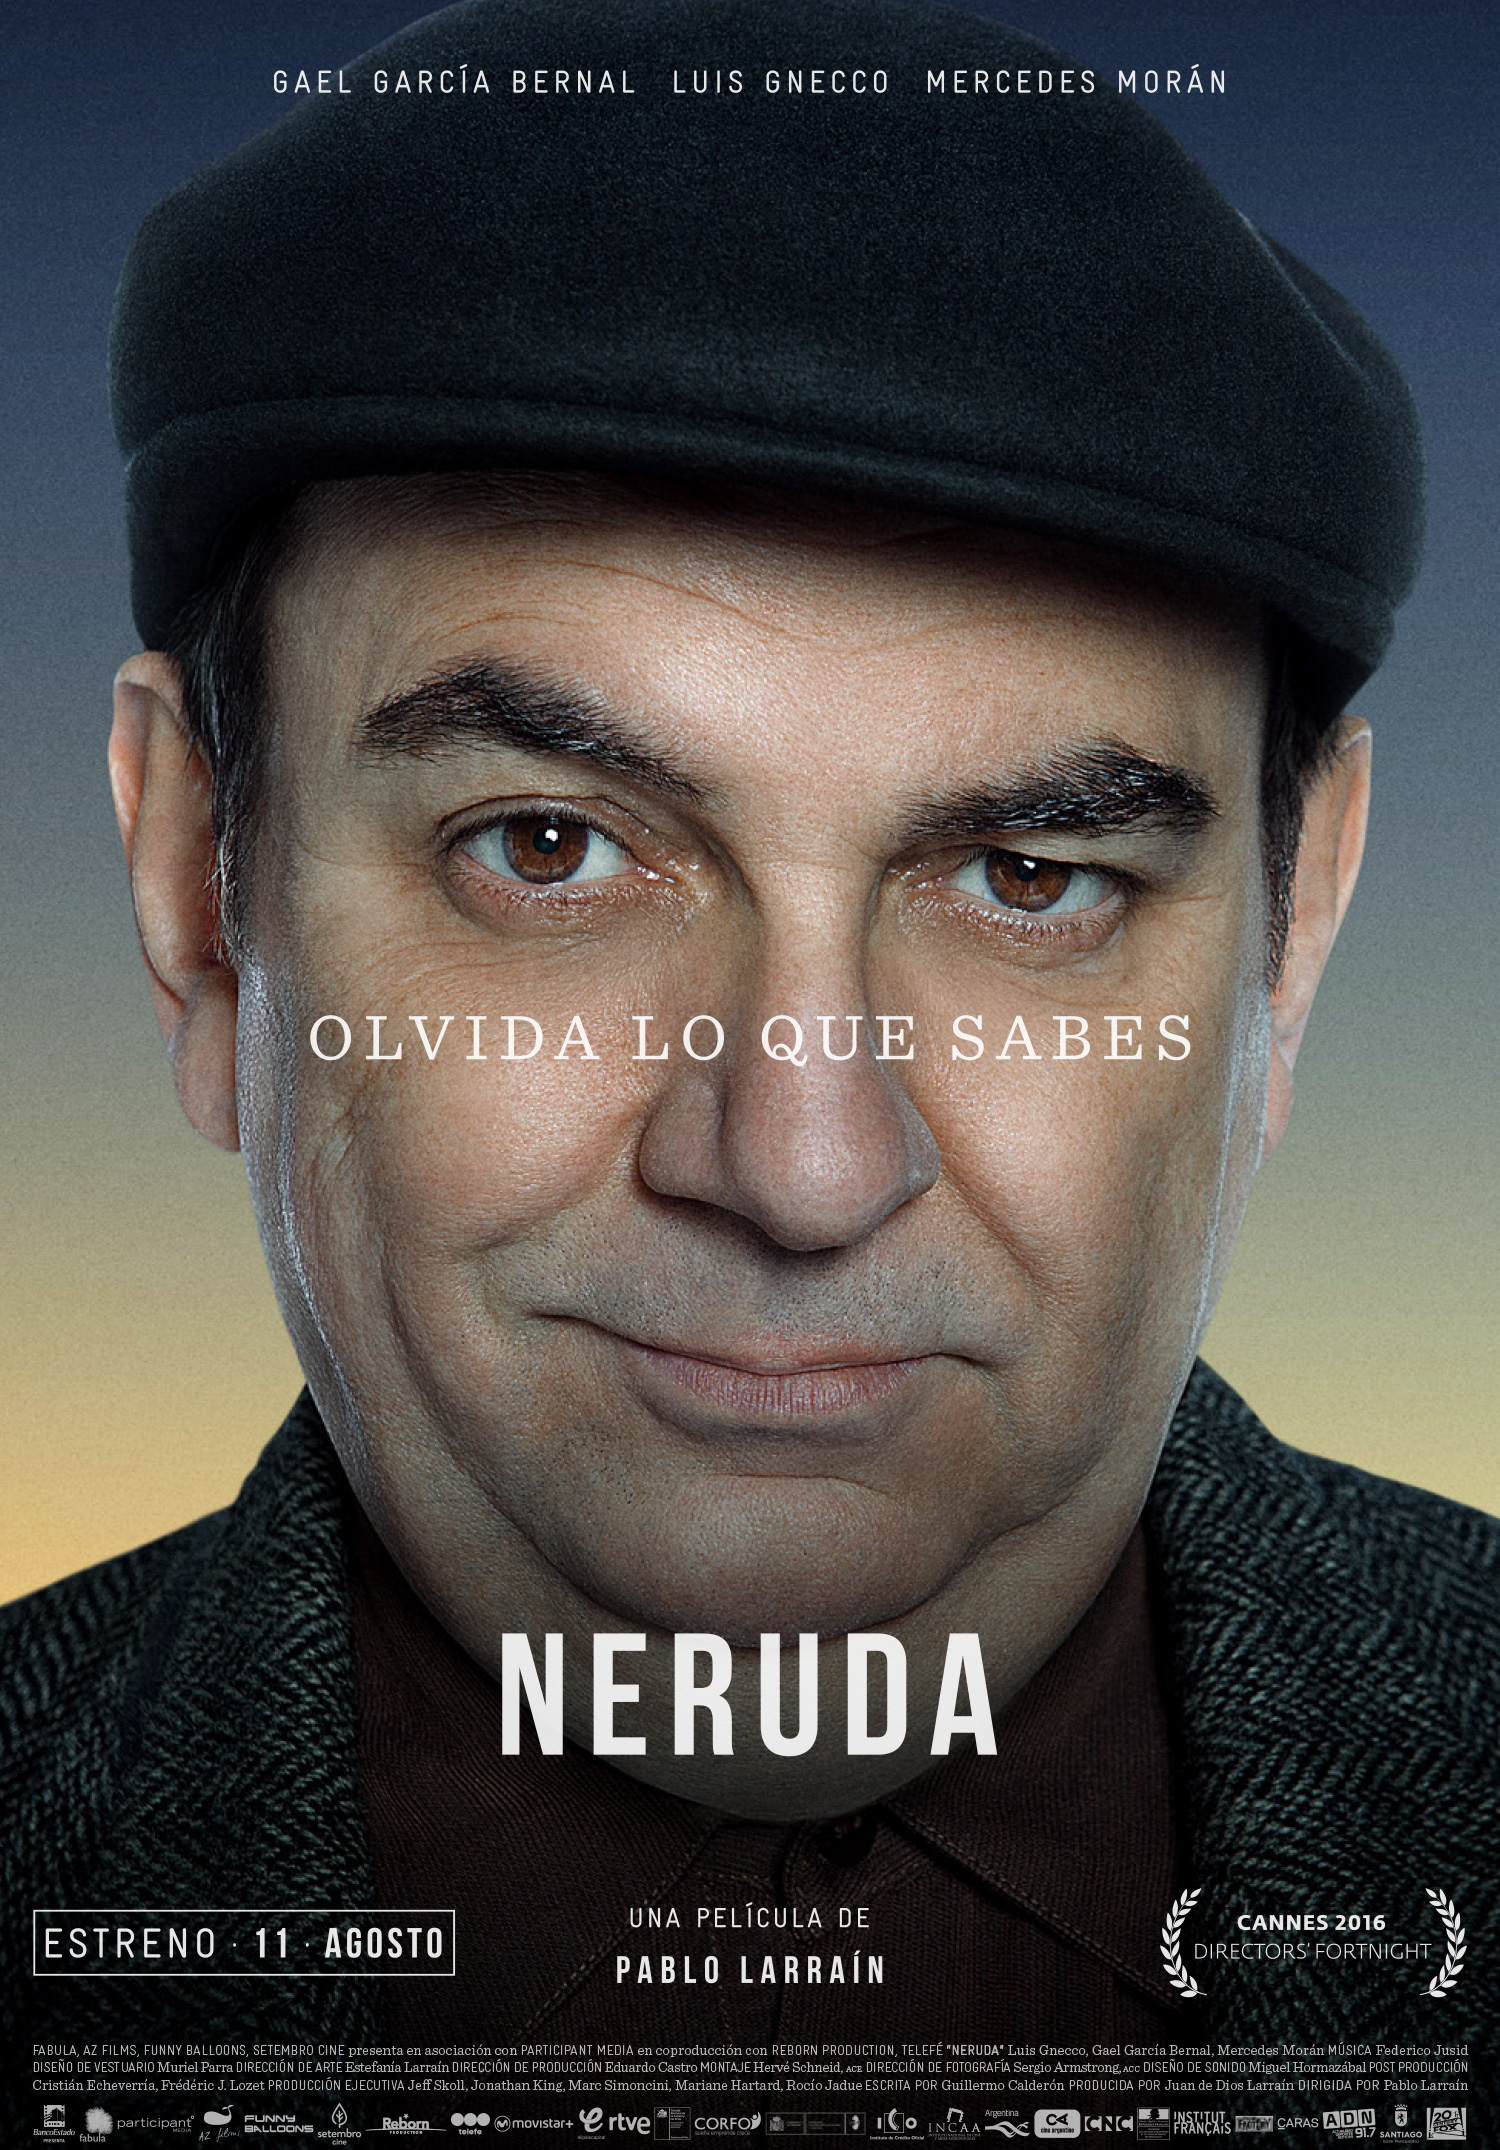 El afiche de "Neruda".